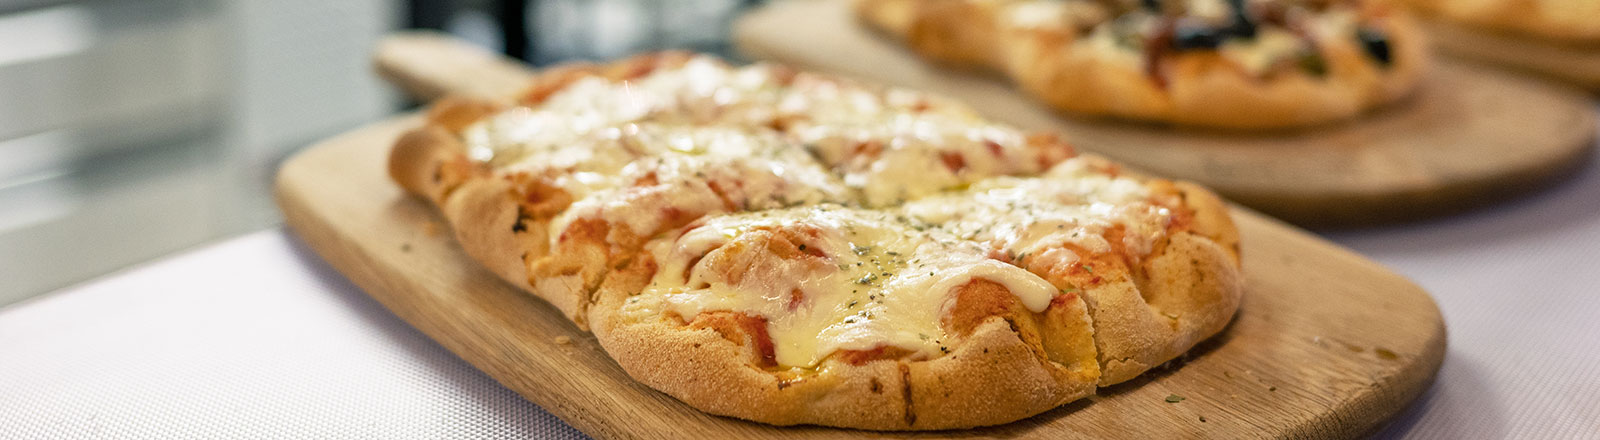 Pinsa - die leckere, bekömmliche Alternative zur Pizza